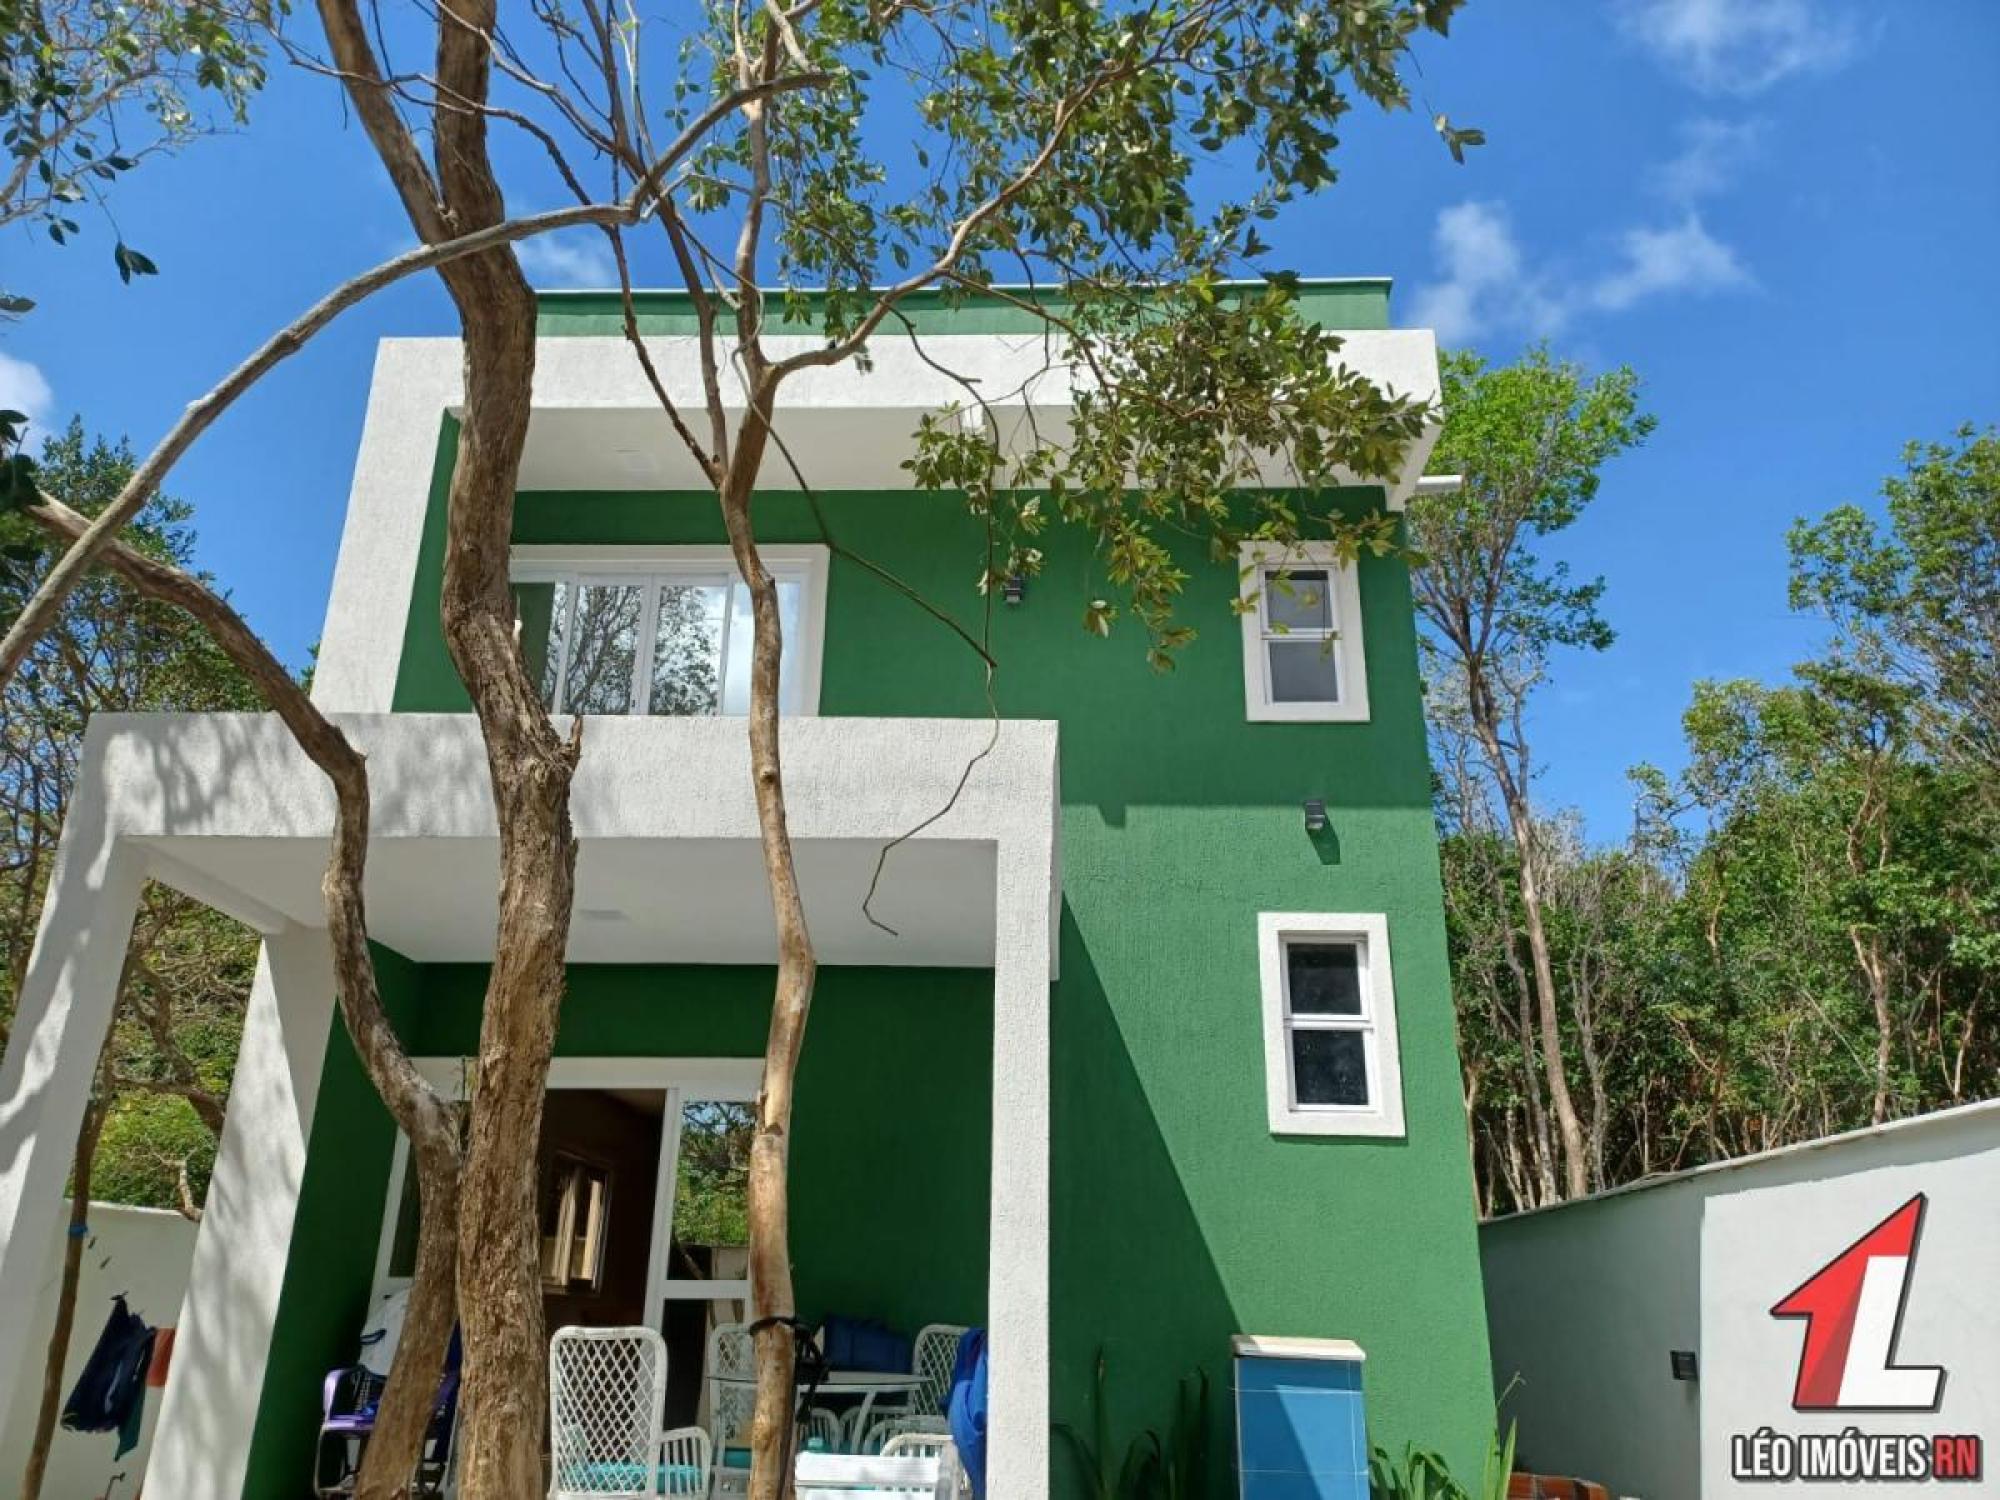 Picture of Home For Sale in Tibau Do Sul, Rio Grande do Norte, Brazil